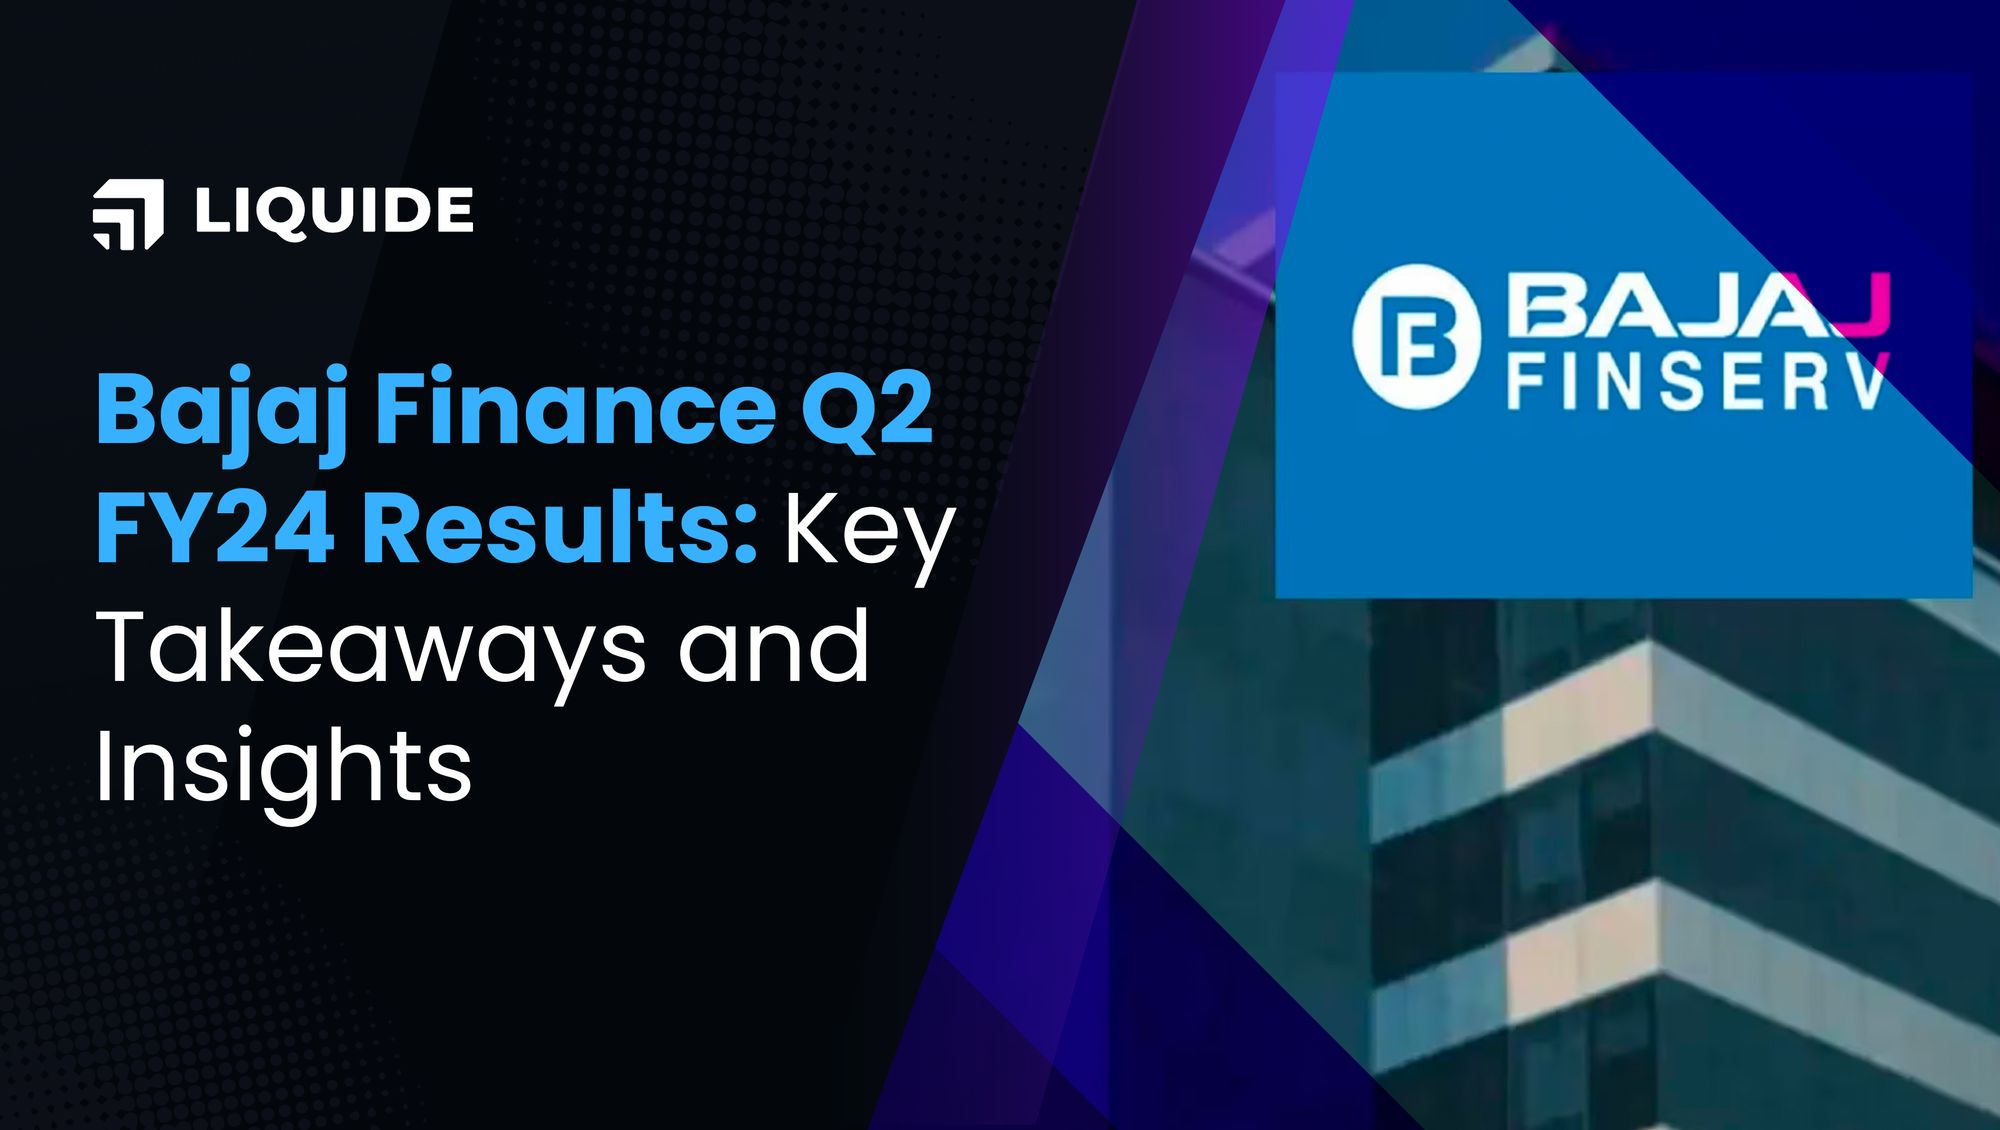 Bajaj Finance, Bajaj, Bajaj finance q2 results, liquide